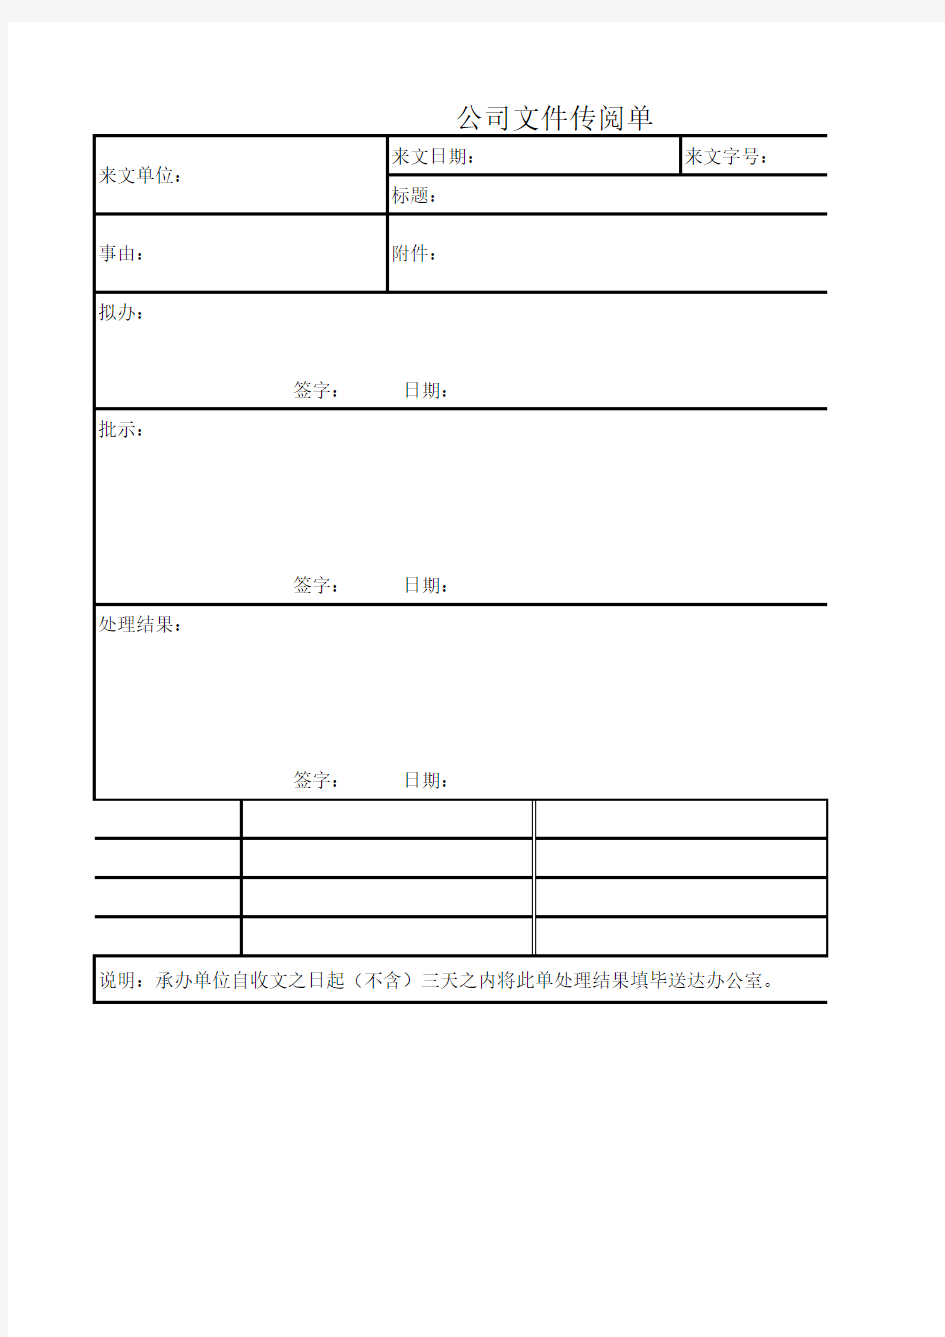 公司文件传阅单Excel图表 